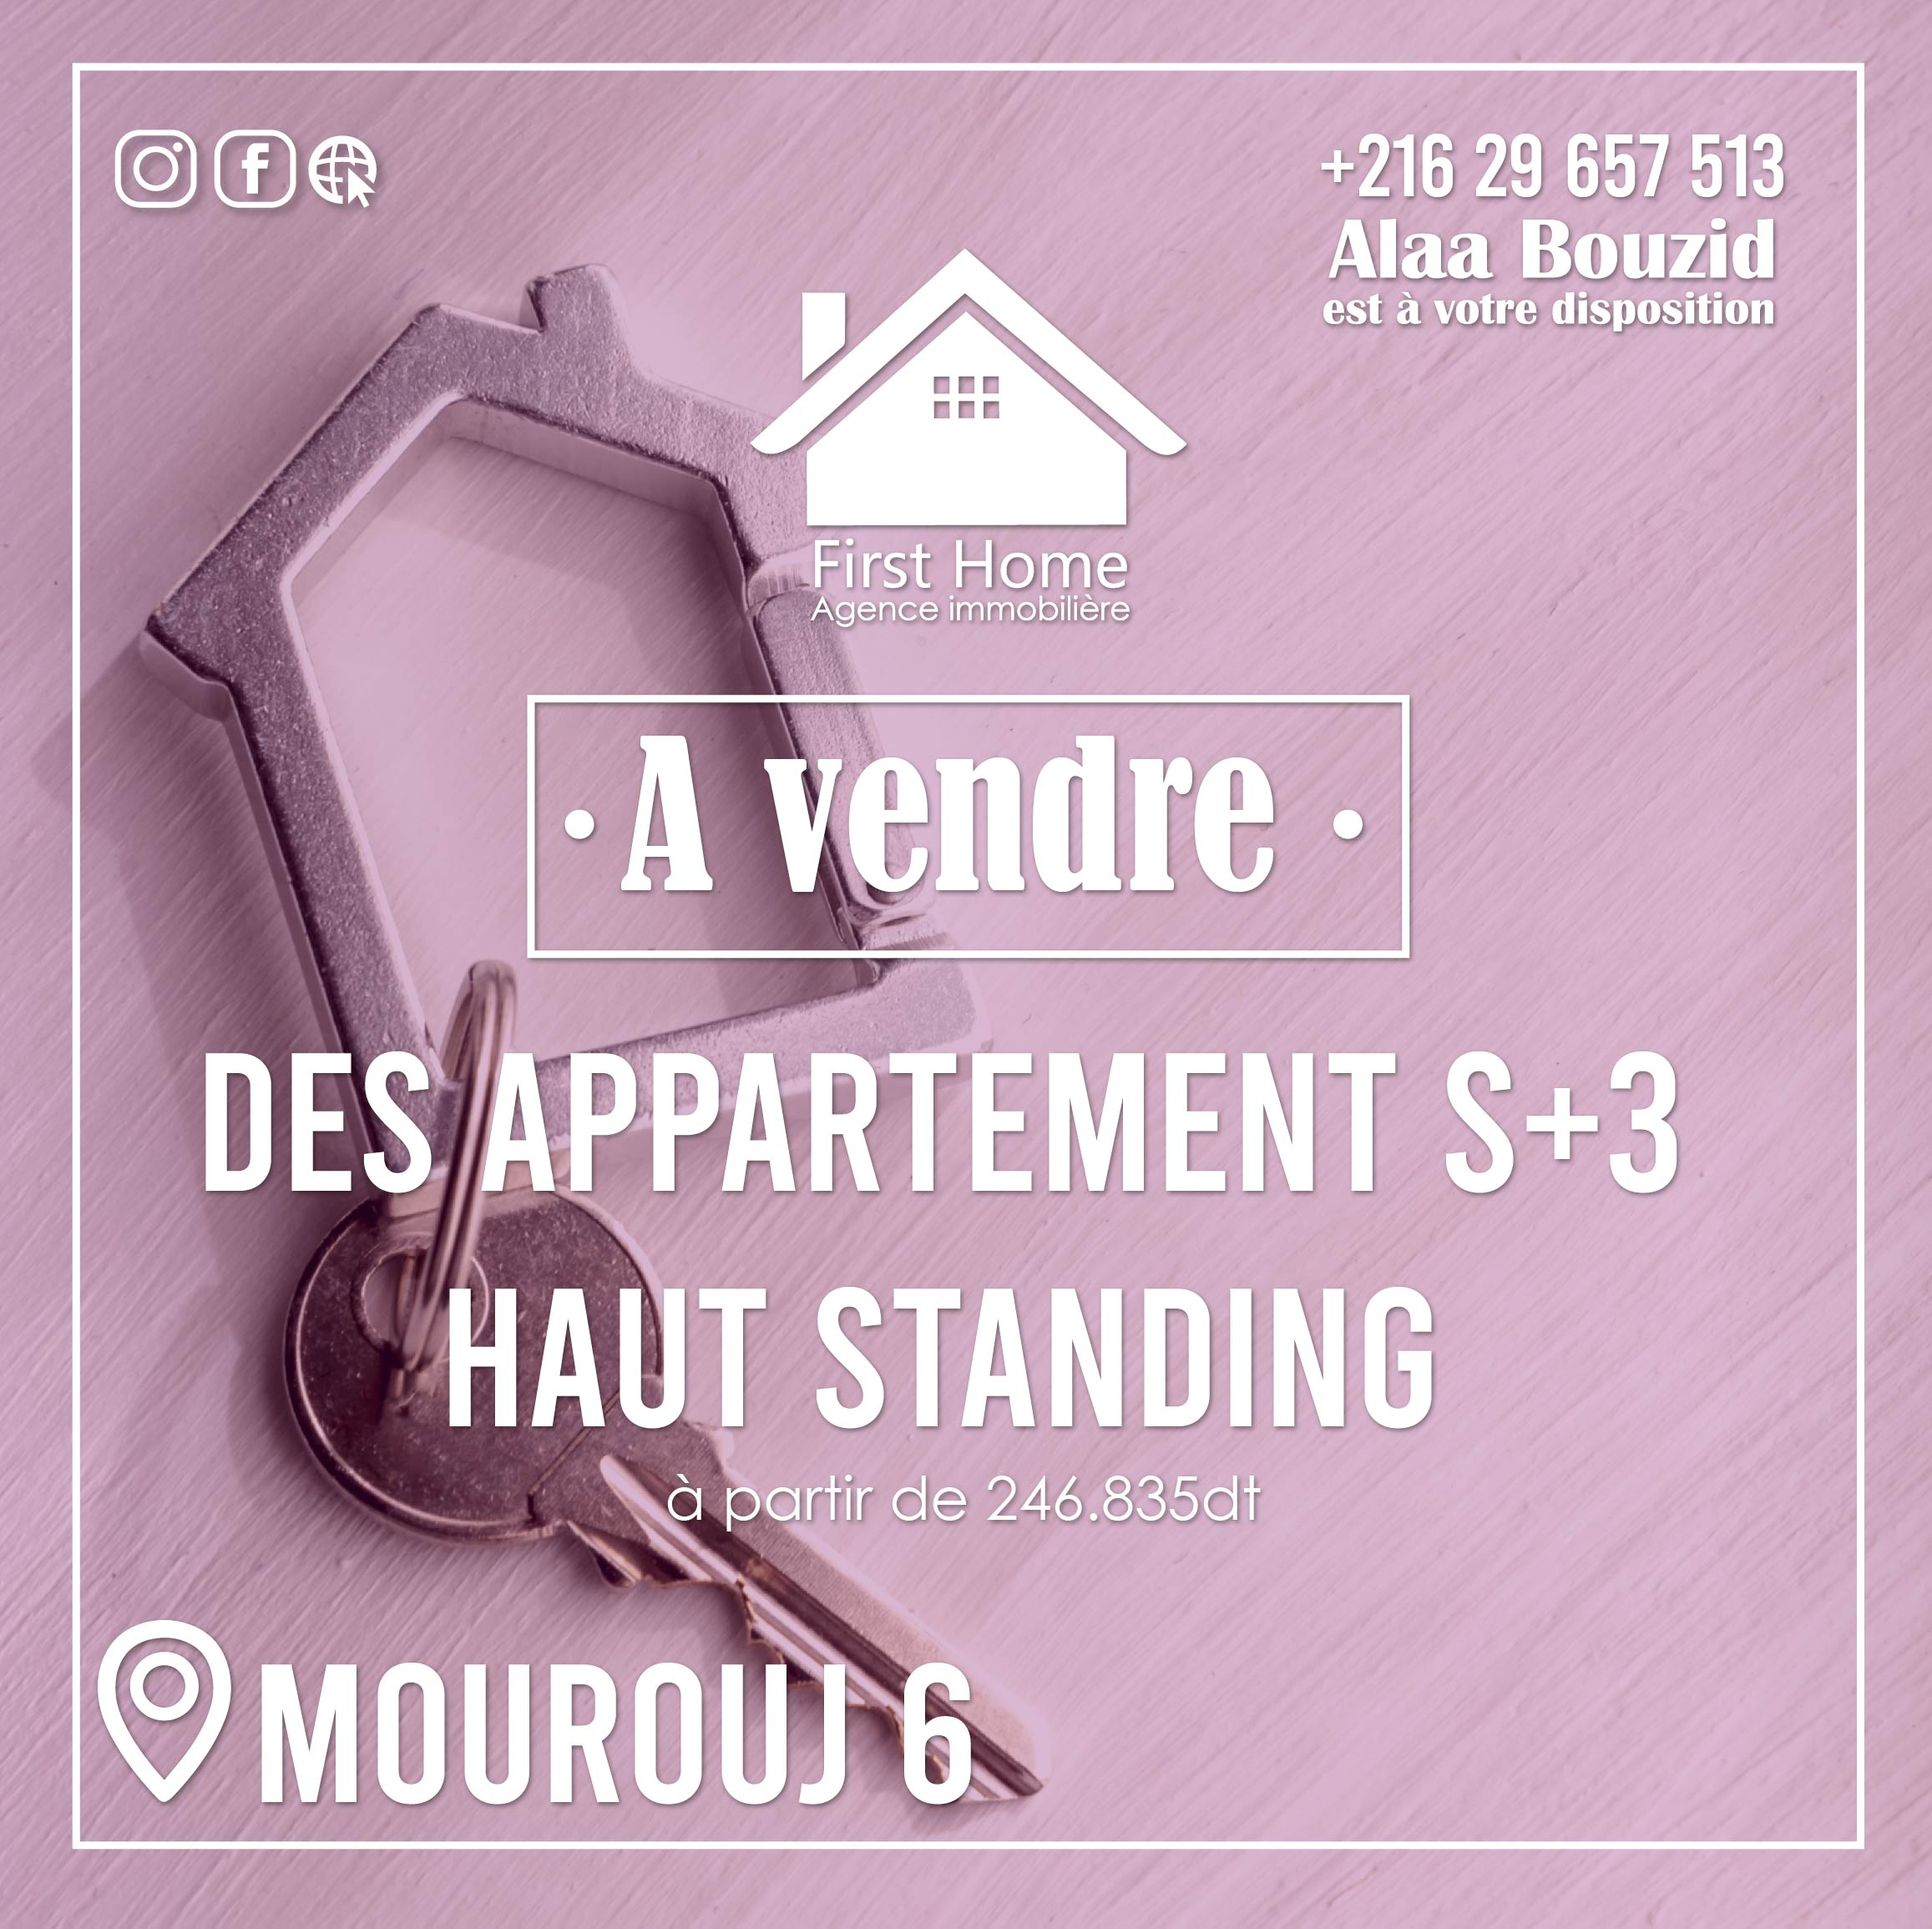 A vendre des appartements S+3 de Haut Standing  à El Mourouj 6